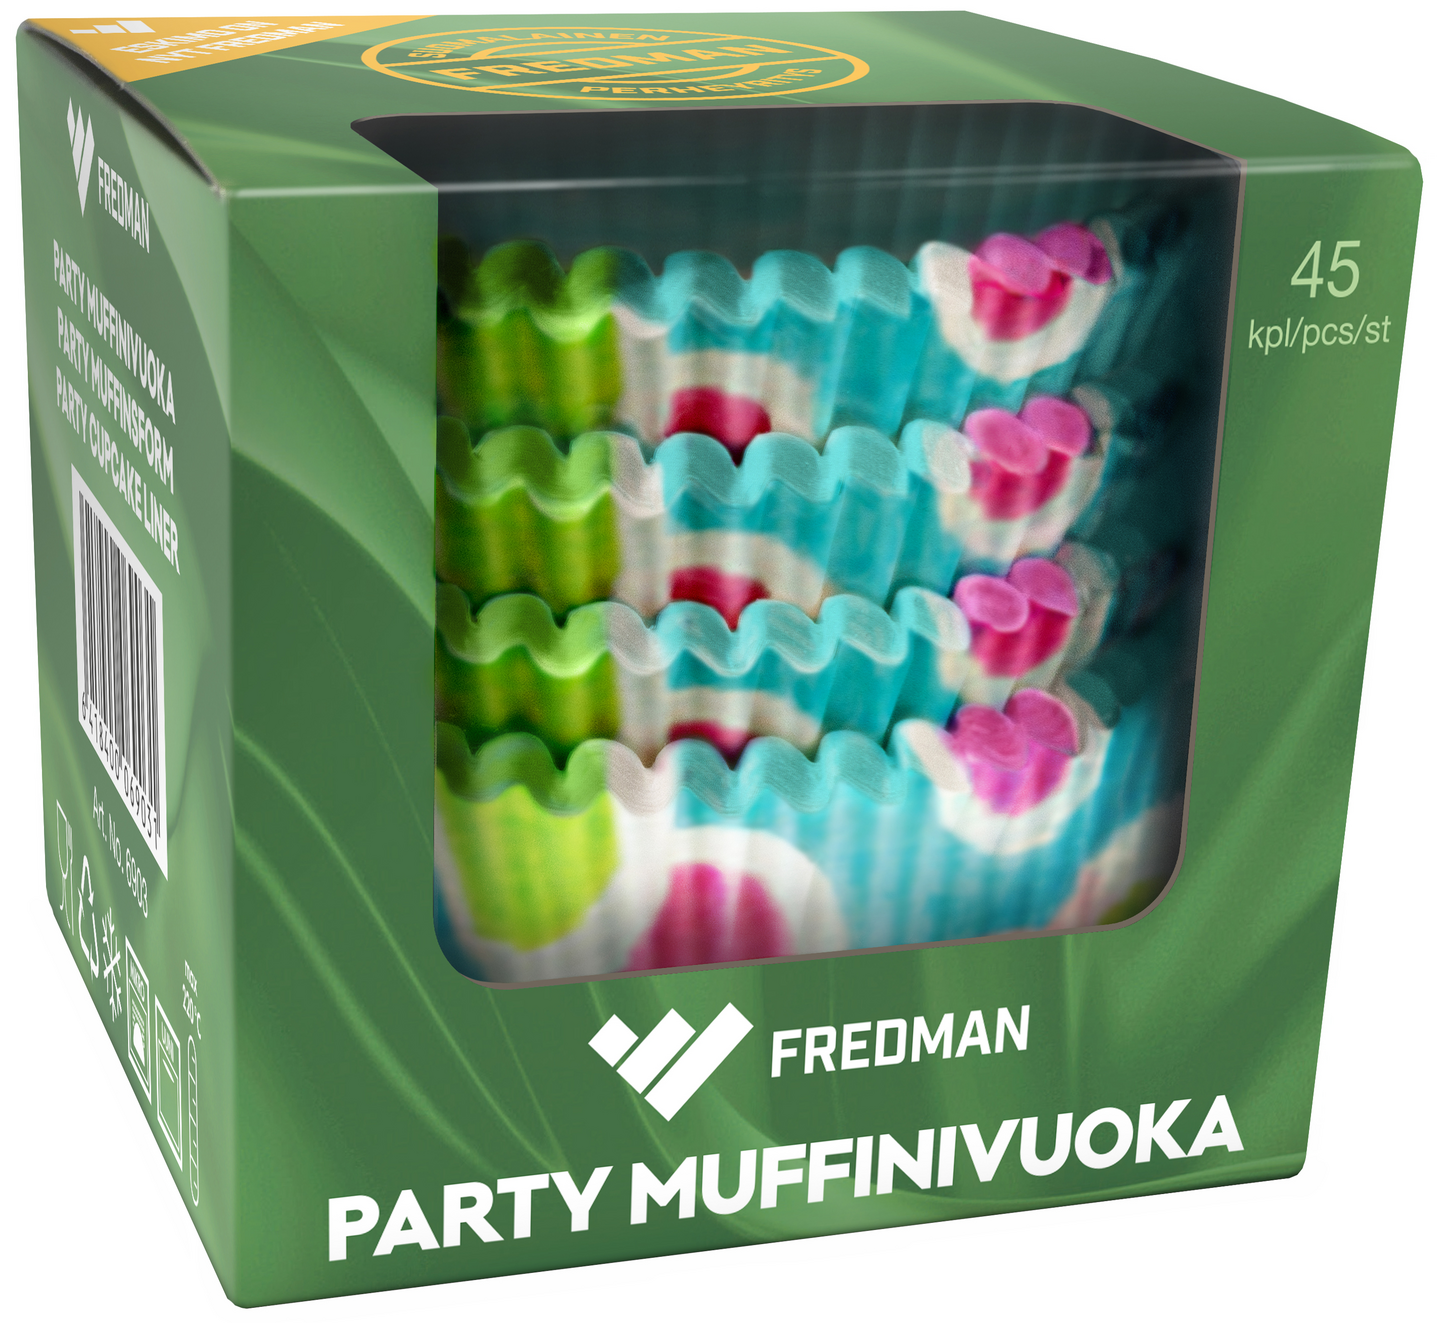 Fredman Party muffinivuoka 45kpl